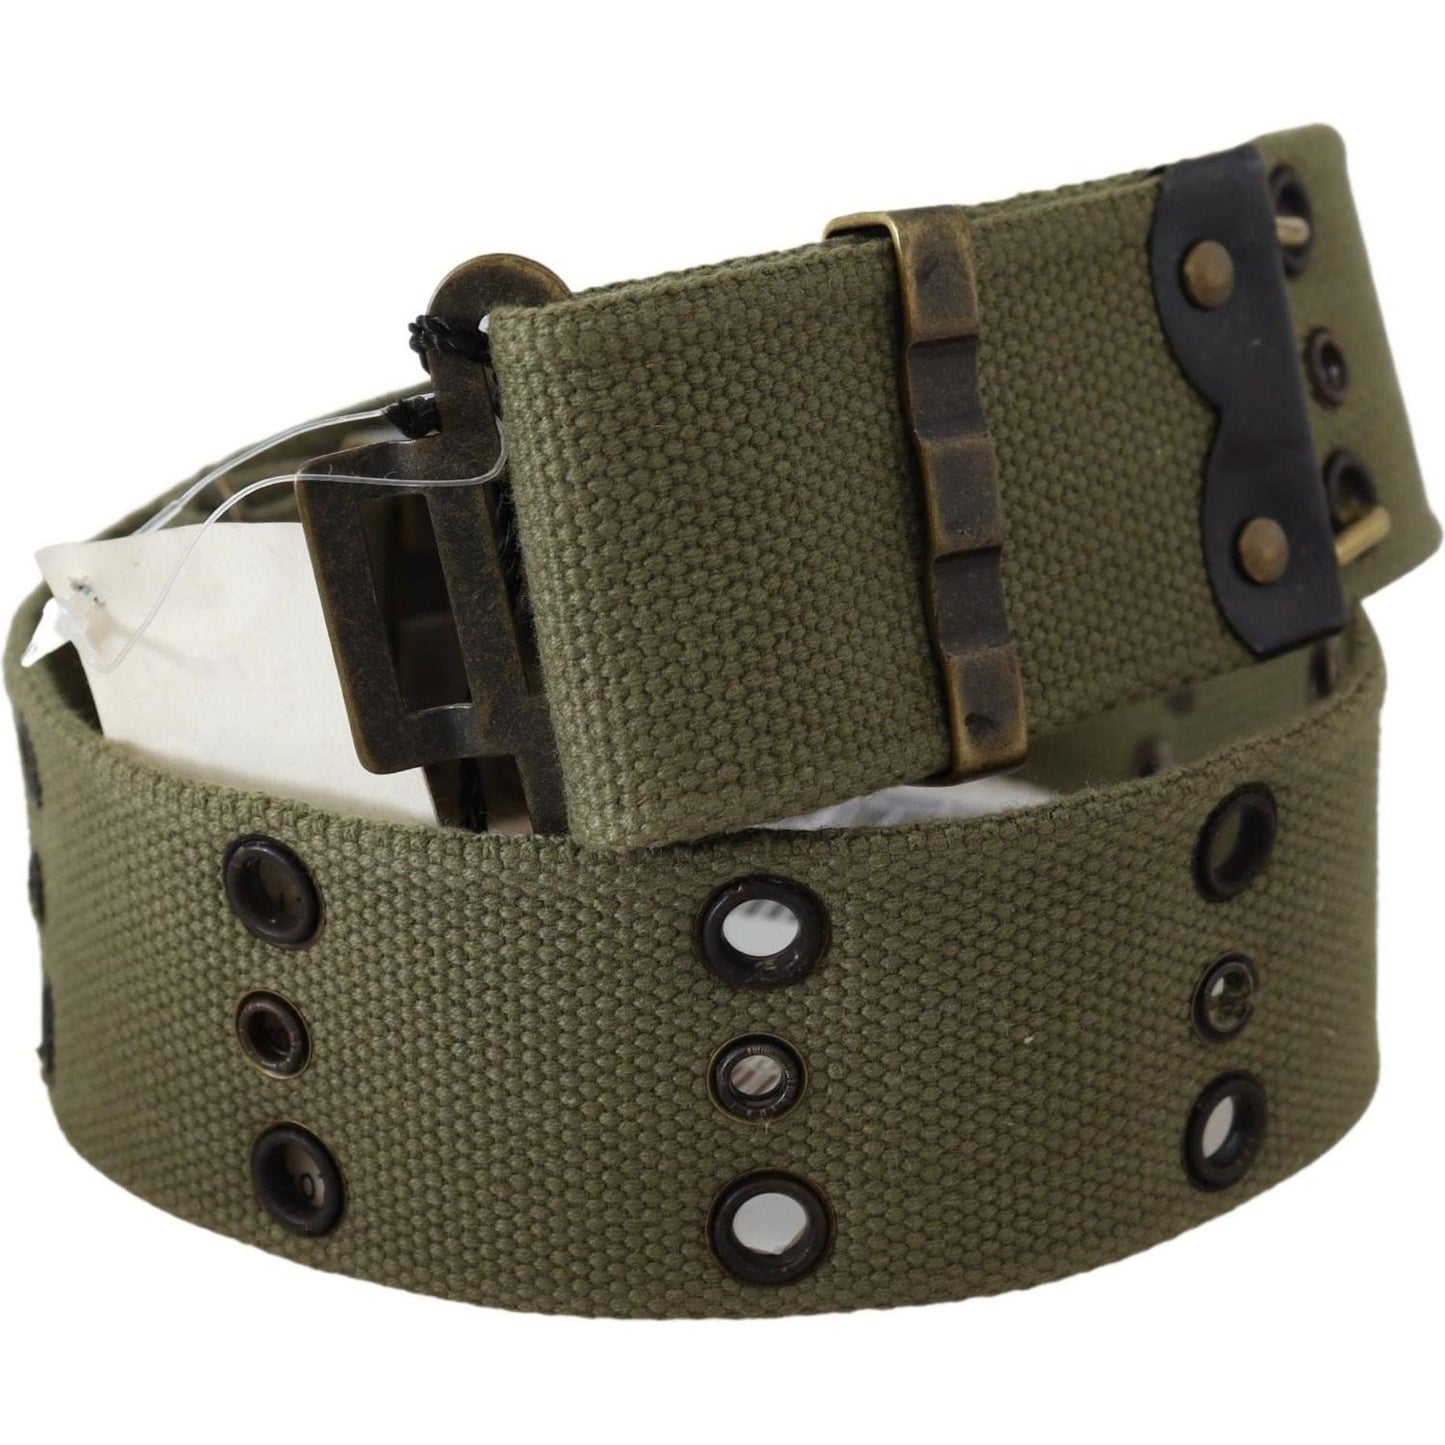 Ermanno Scervino Chic Army Green Cotton Waist Belt Belt green-100-cotton-rustic-bronze-buckle-belt